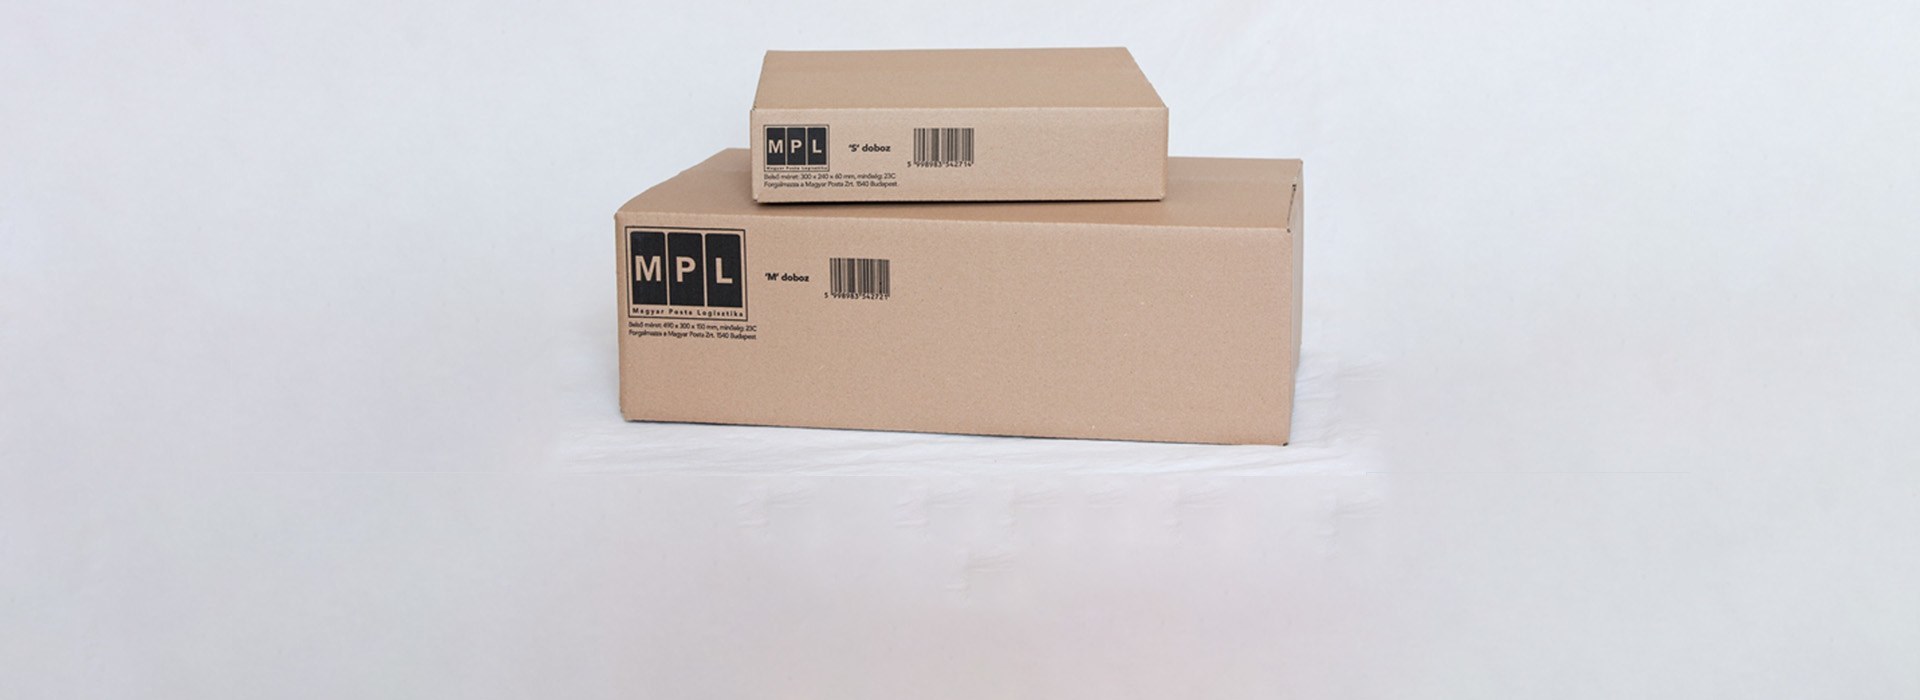 A képen két, különböző méretű, szabványos MPL doboz található.